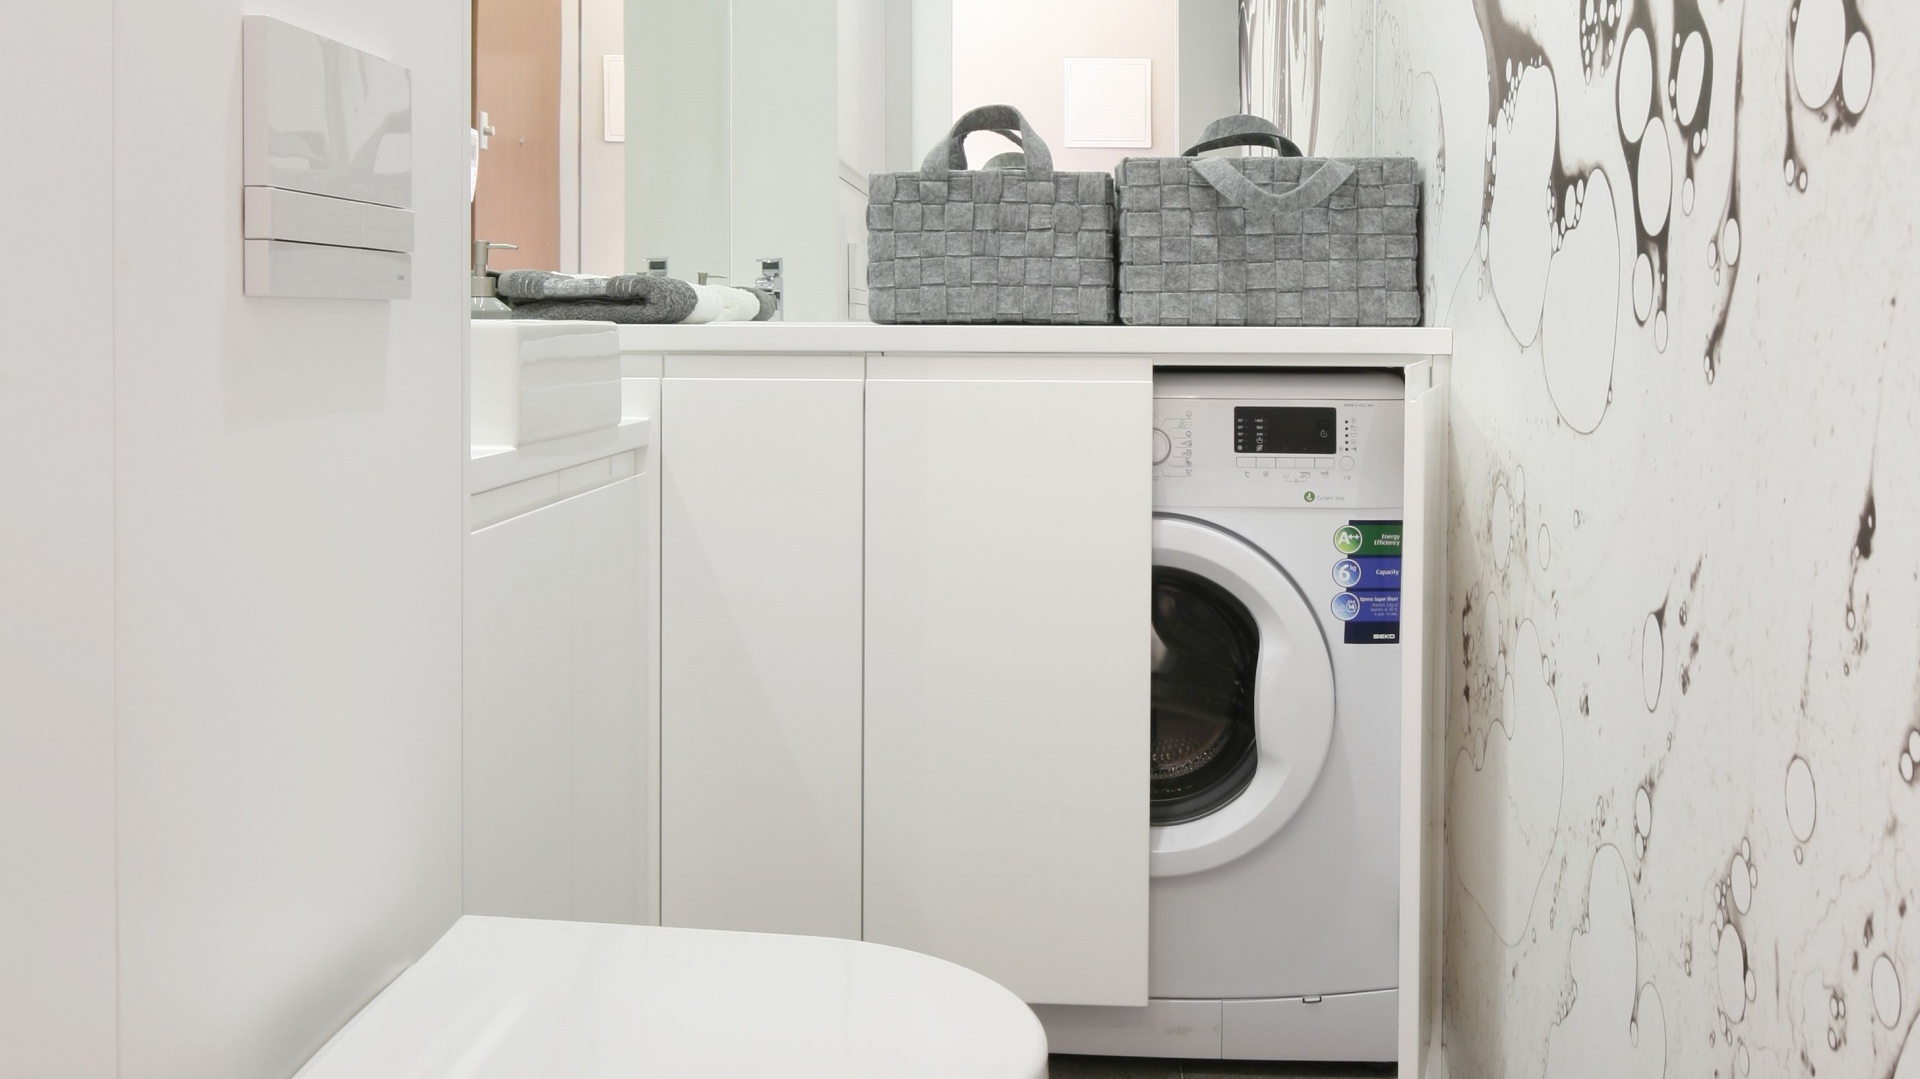 Łazienka z pralką - 10 najlepszych pomysłów architektów